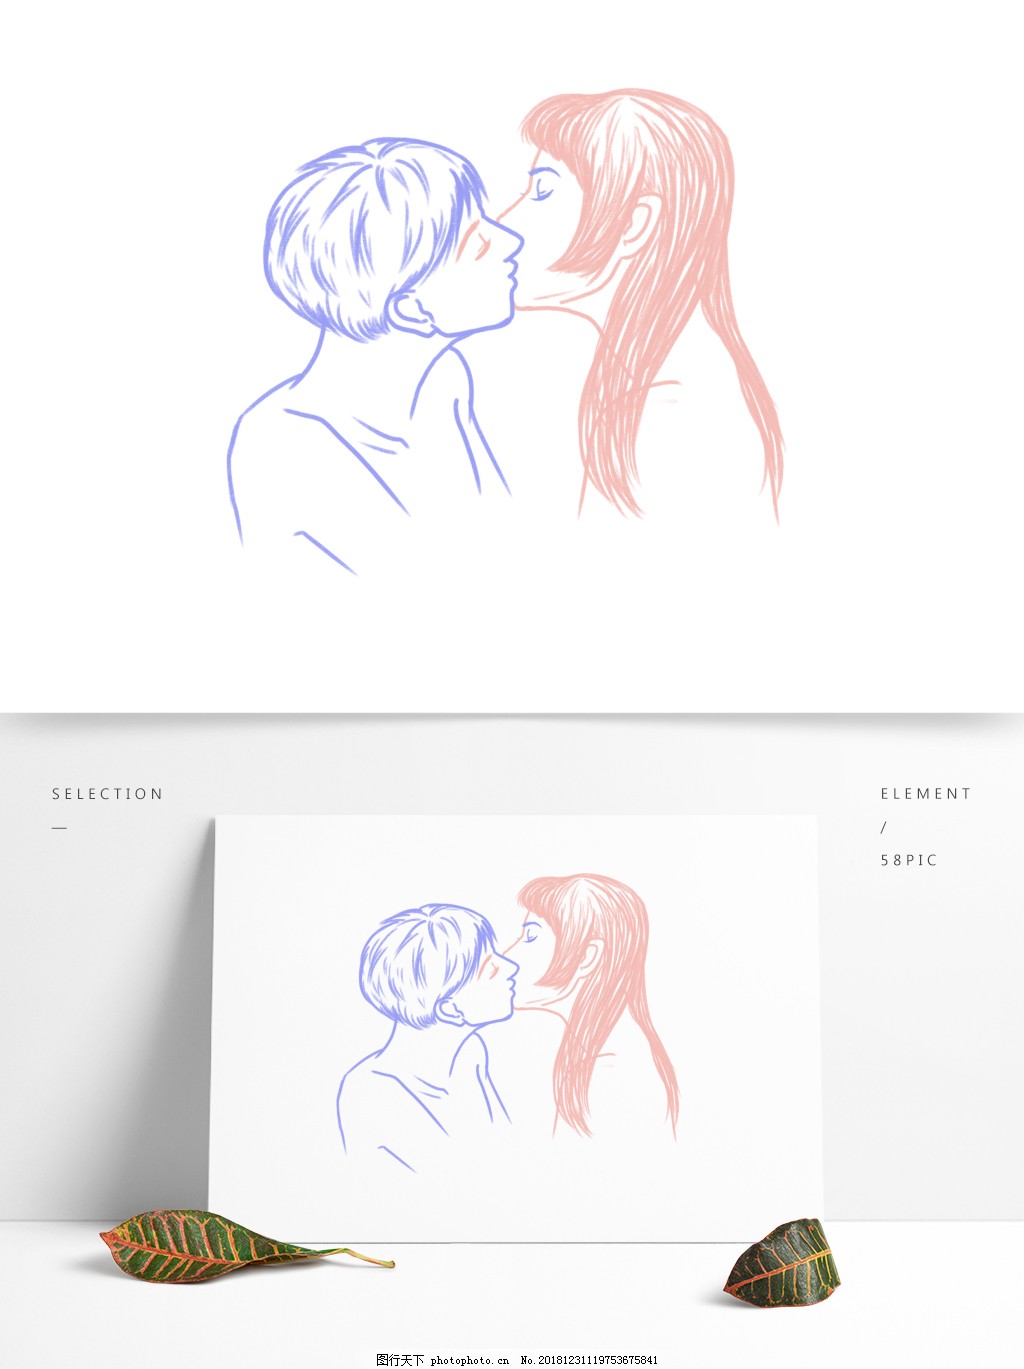 國際接吻日浪漫接吻的情侶手繪設計, 國際接吻日, 手繪, 插畫素材圖案，PSD和PNG圖片免費下載